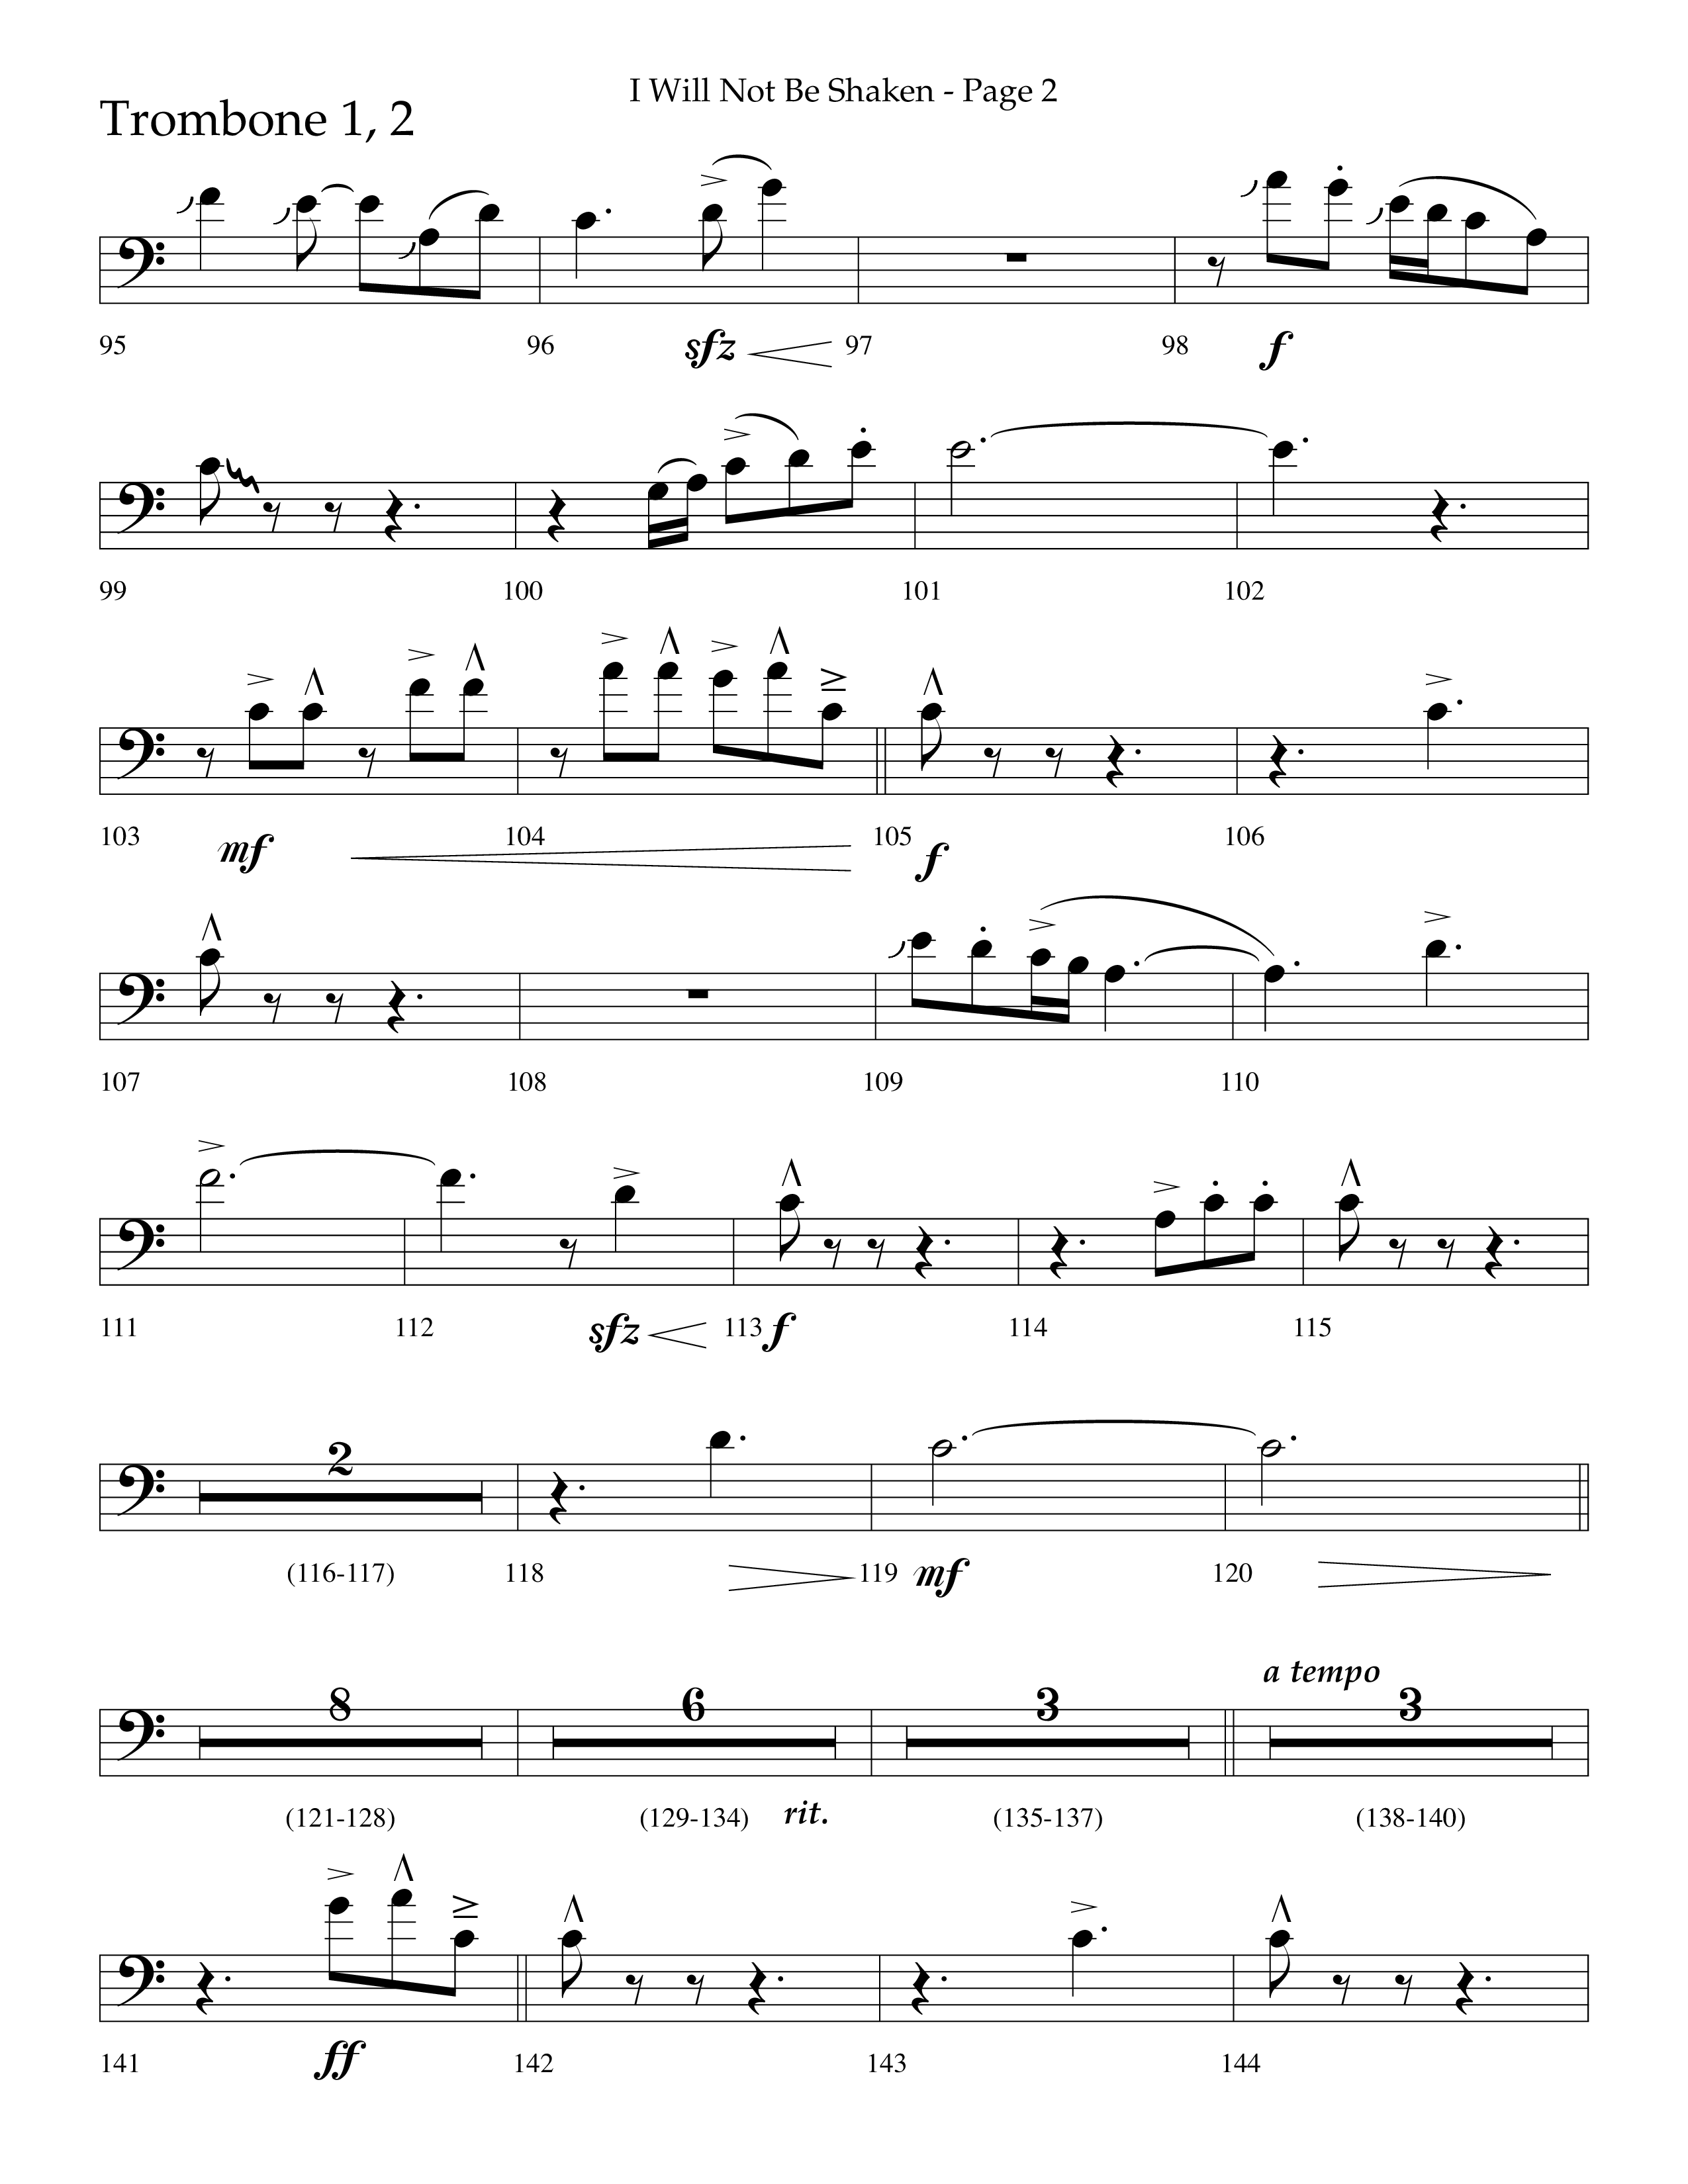 I Will Not Be Shaken (Choral Anthem SATB) Trombone 1/2 (Lifeway Choral / Arr. Cliff Duren)